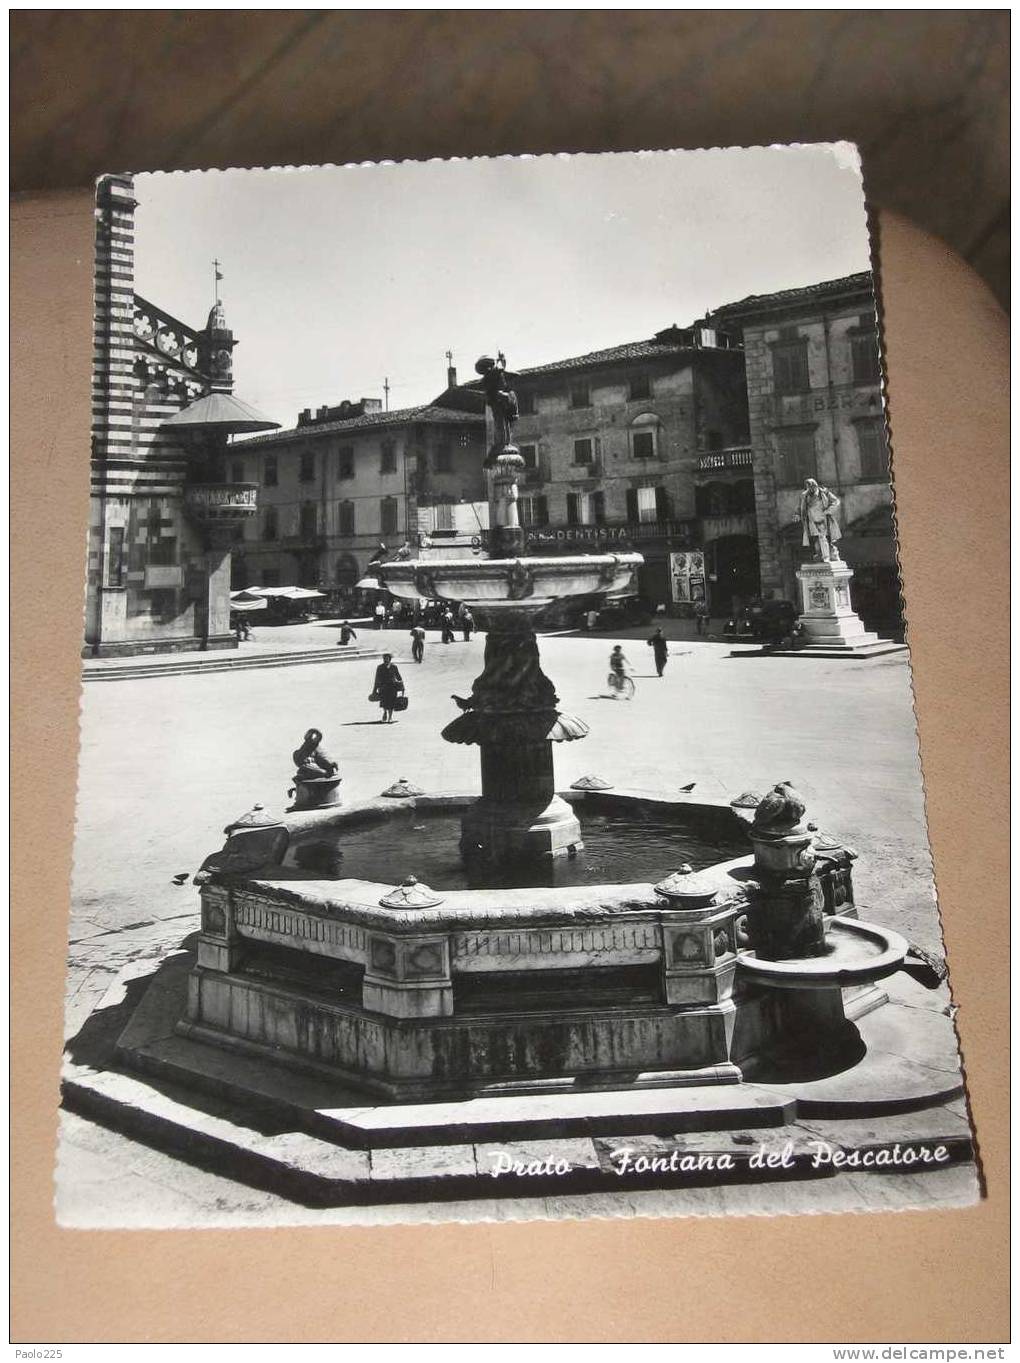 PRATO 1953 FONTANA DEL PESCATORE MOVIMENTATA BN VG ....ENTRATE! - Prato